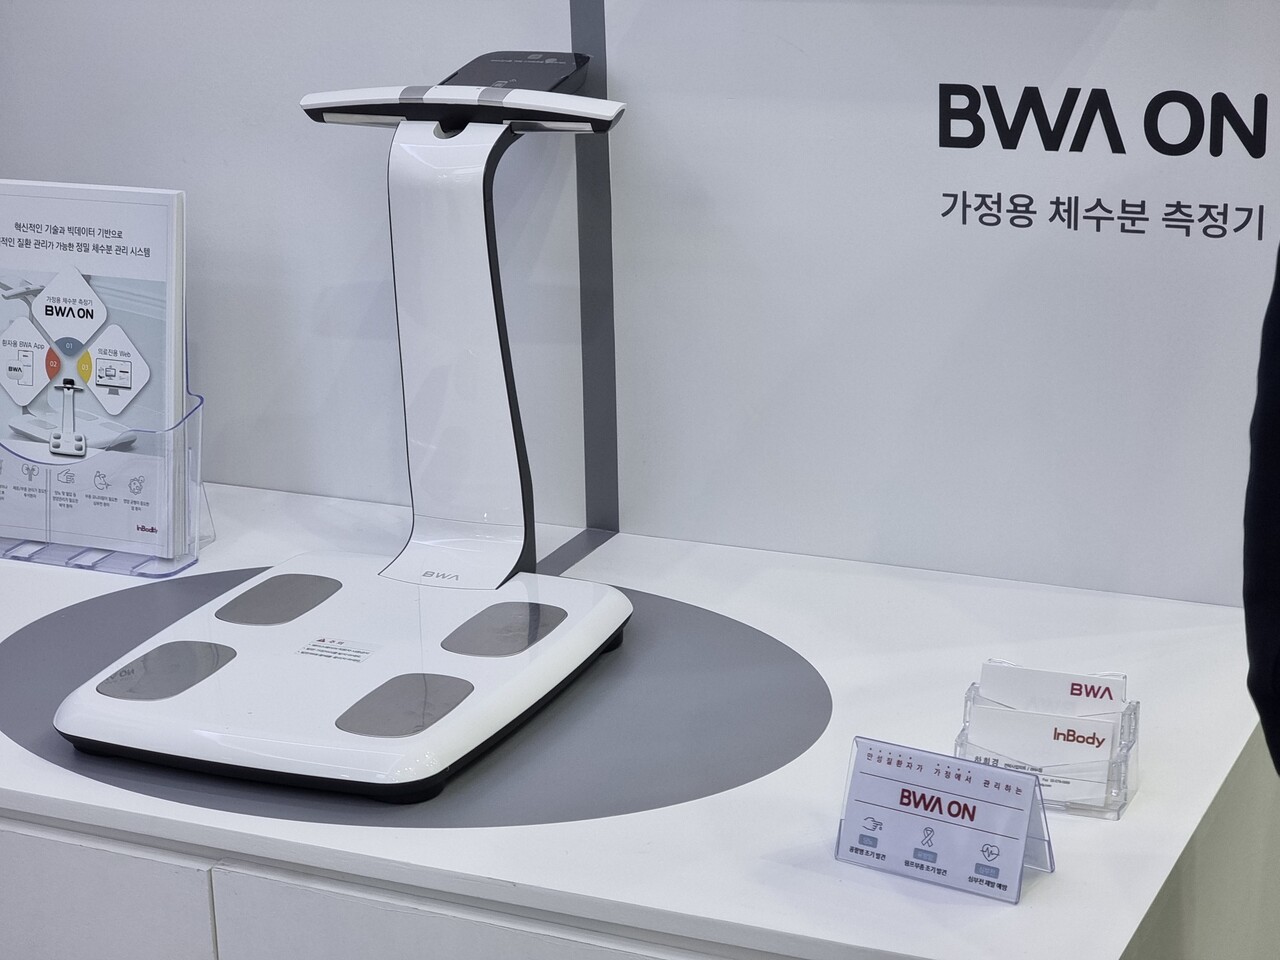 가정용 체수분측정기 ‘BWA ON’ 제품이미지.